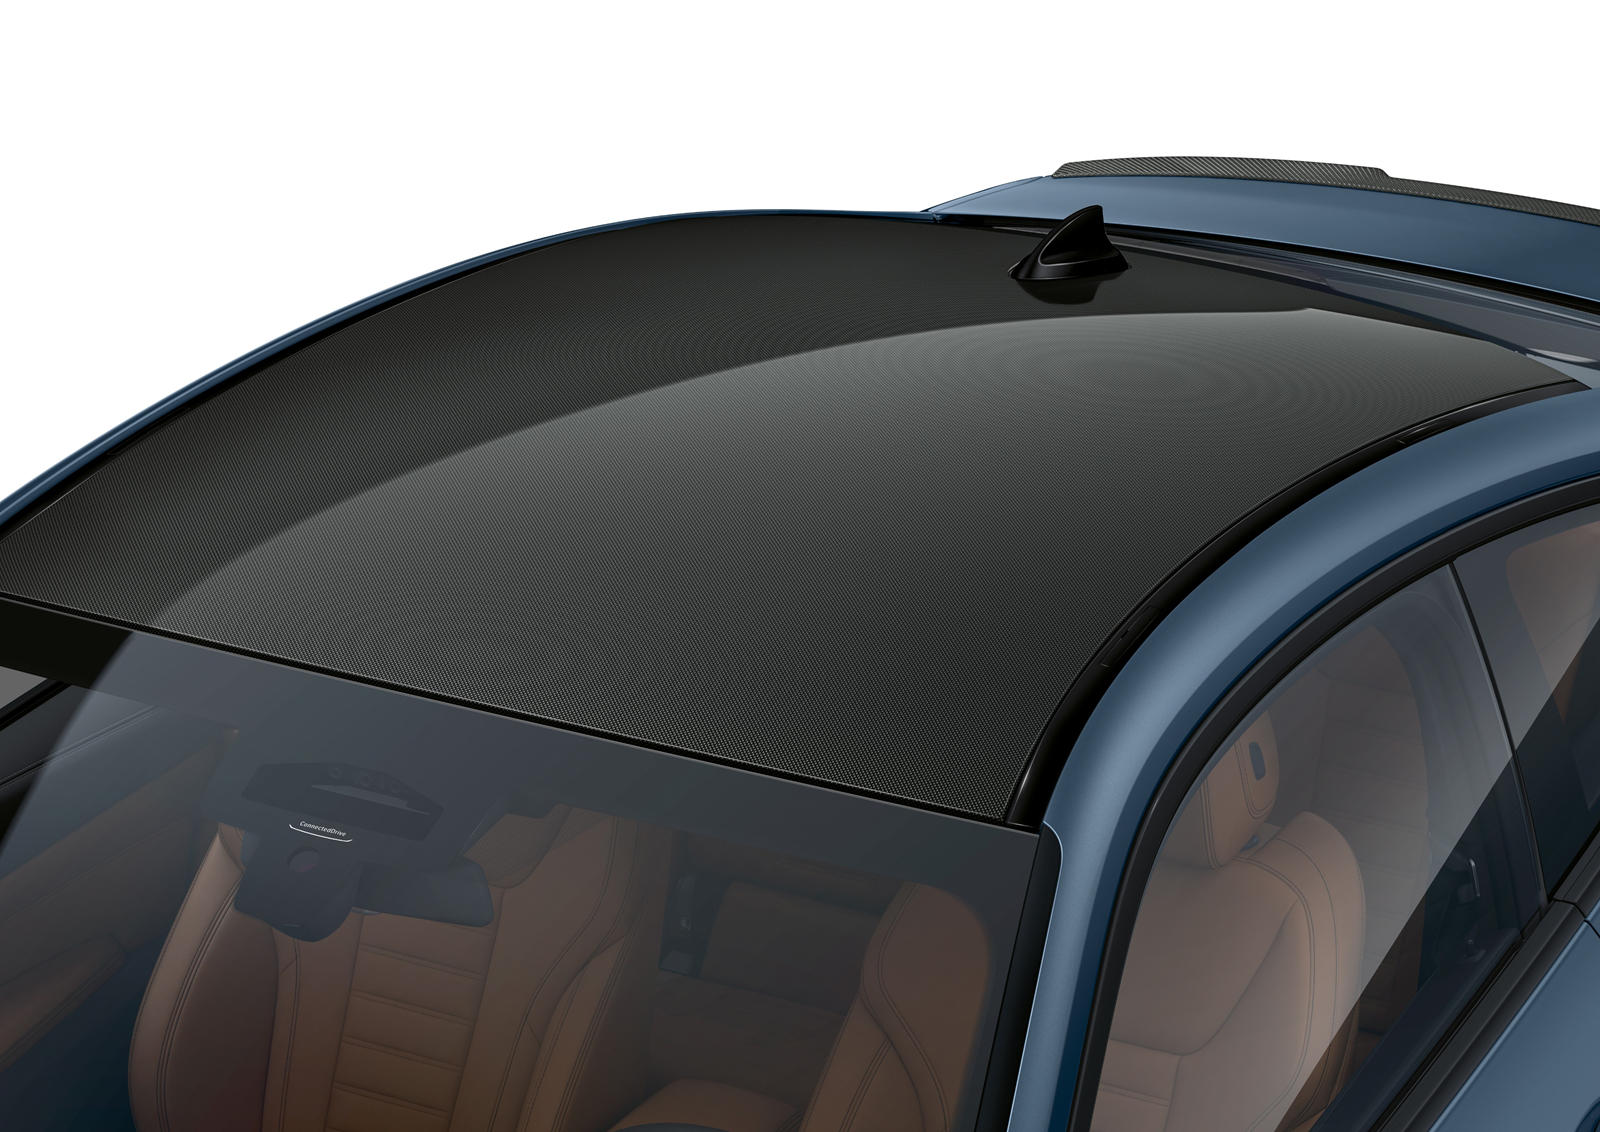 Крыша M Carbon не только помогает снизить вес, но и снижает центр тяжести автомобиля для большей маневренности. Наряду с M340i и M440i эта крыша также будет опциональной для дизельных M340d xDrive и M440d xDrive. Оба автомобиля также предназначены то